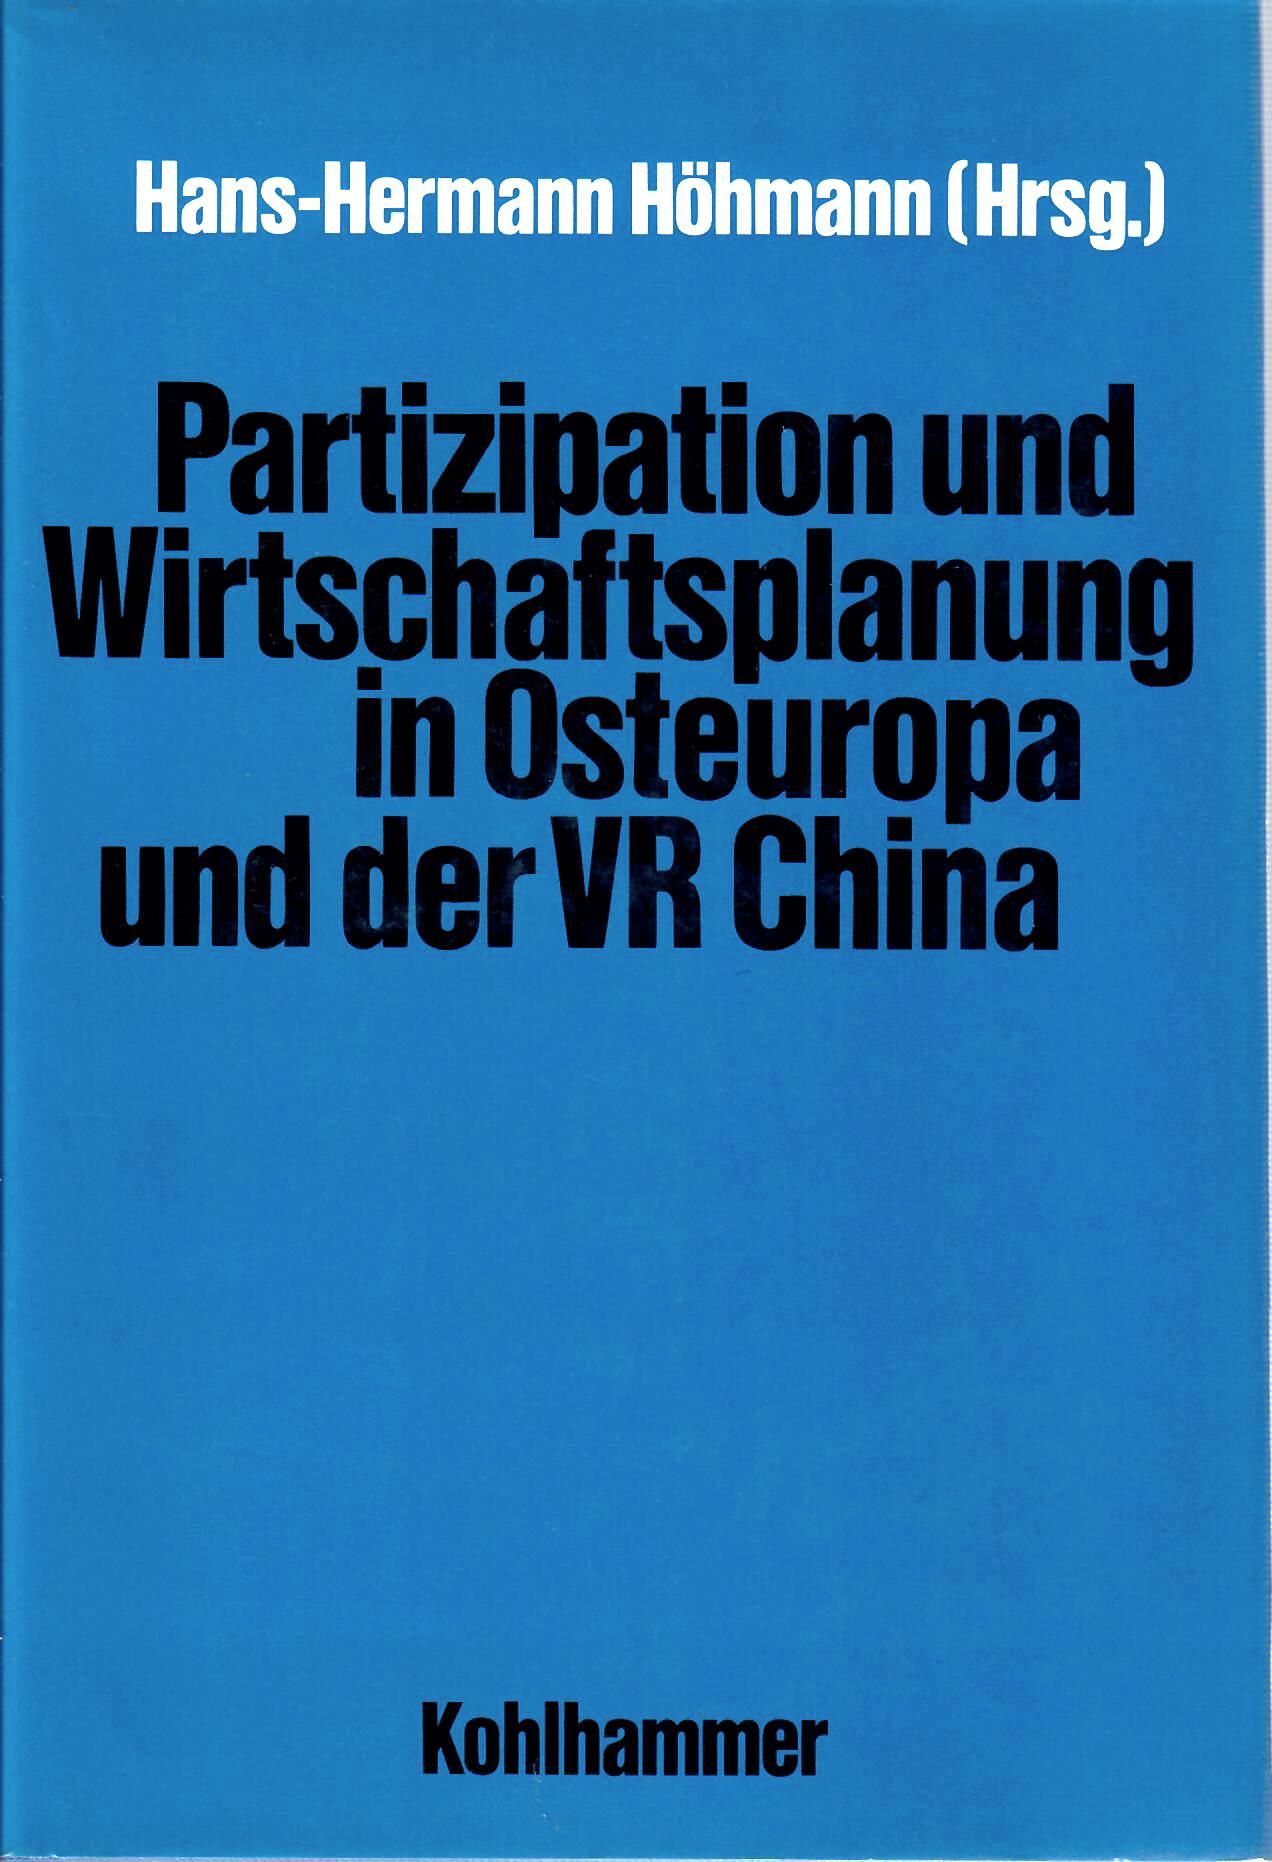 Hhmann, Hans-Hermann   : Partizipation und Wirtschaftsplanung in Osteuropa und der VR China